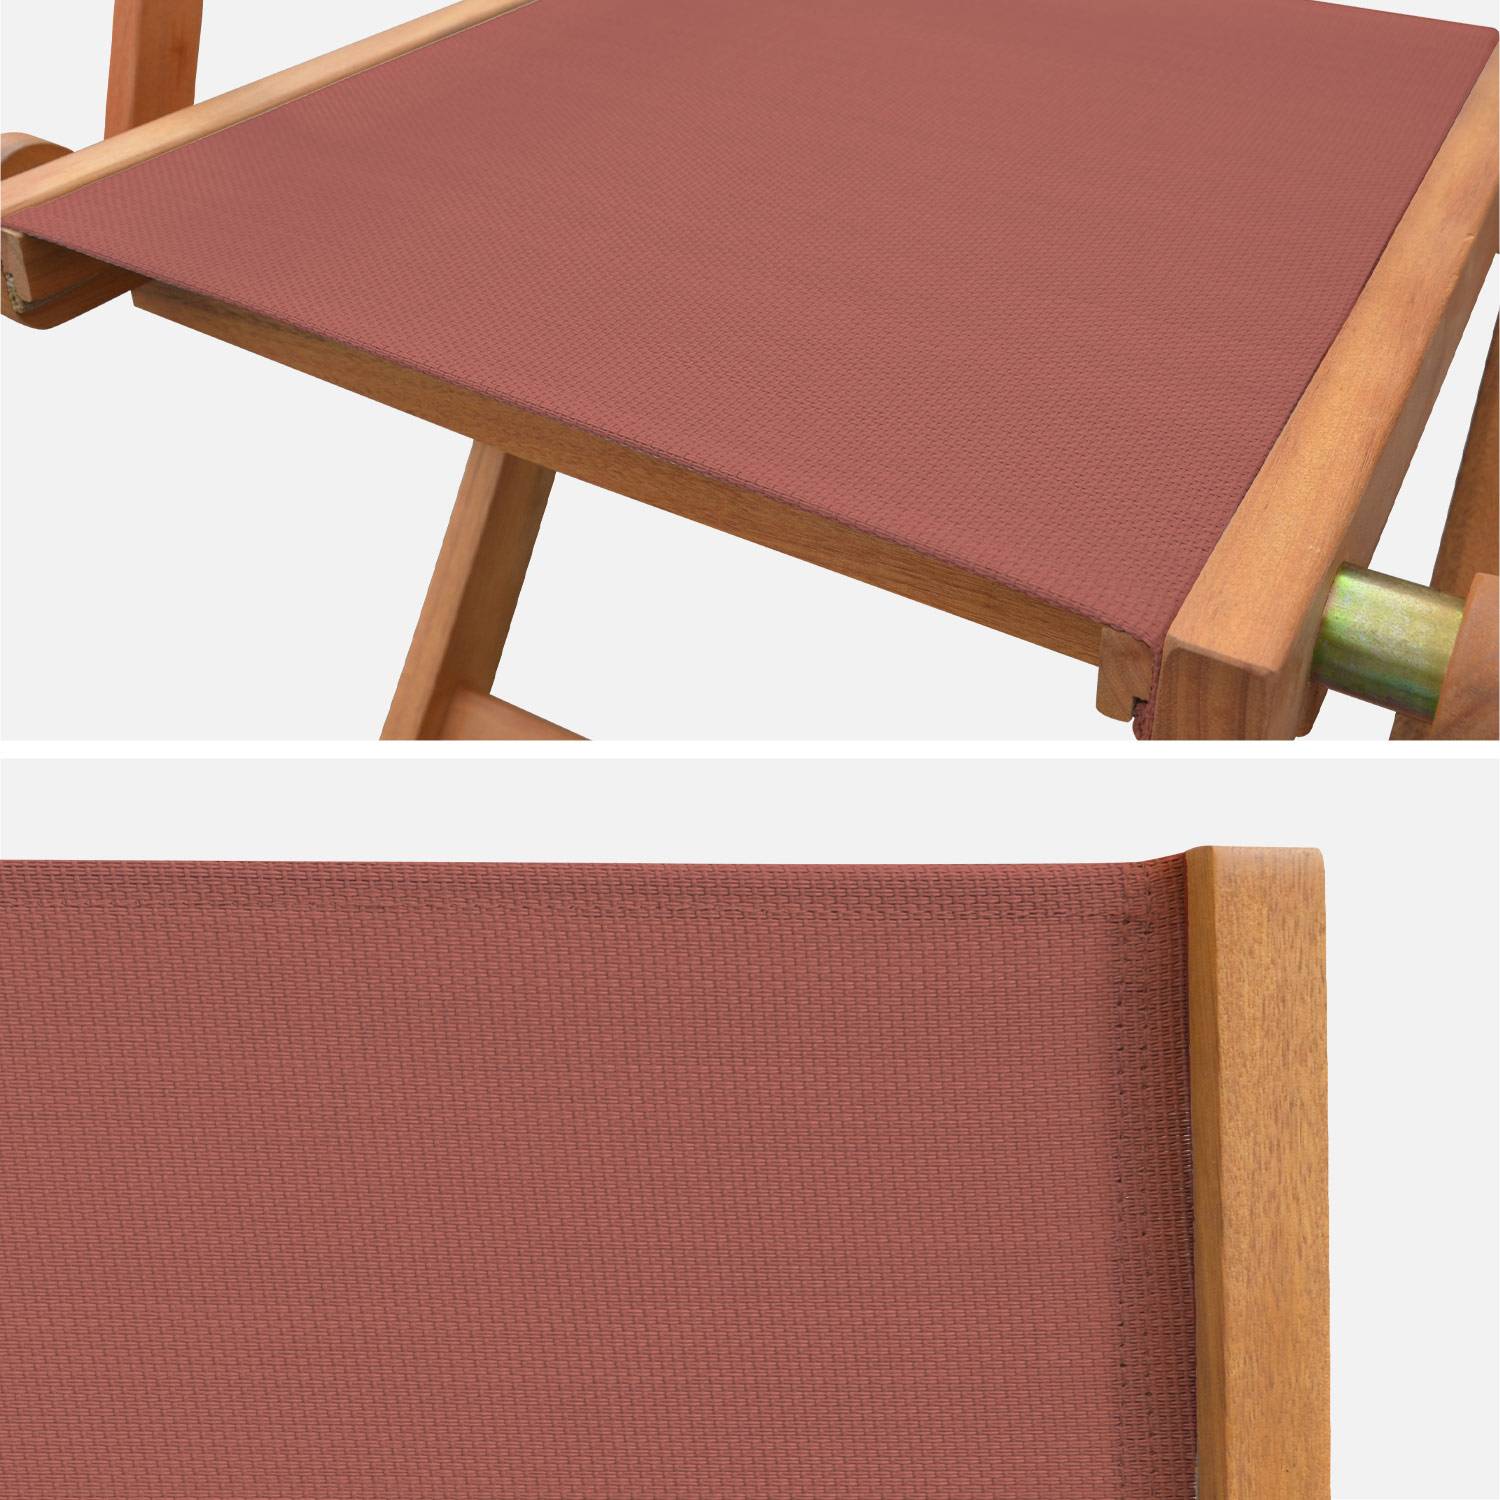 Fauteuils de jardin en bois et textilène - Almeria Terra cotta - 2 fauteuils pliants en bois d'Eucalyptus FSC huilé et textilène Photo6